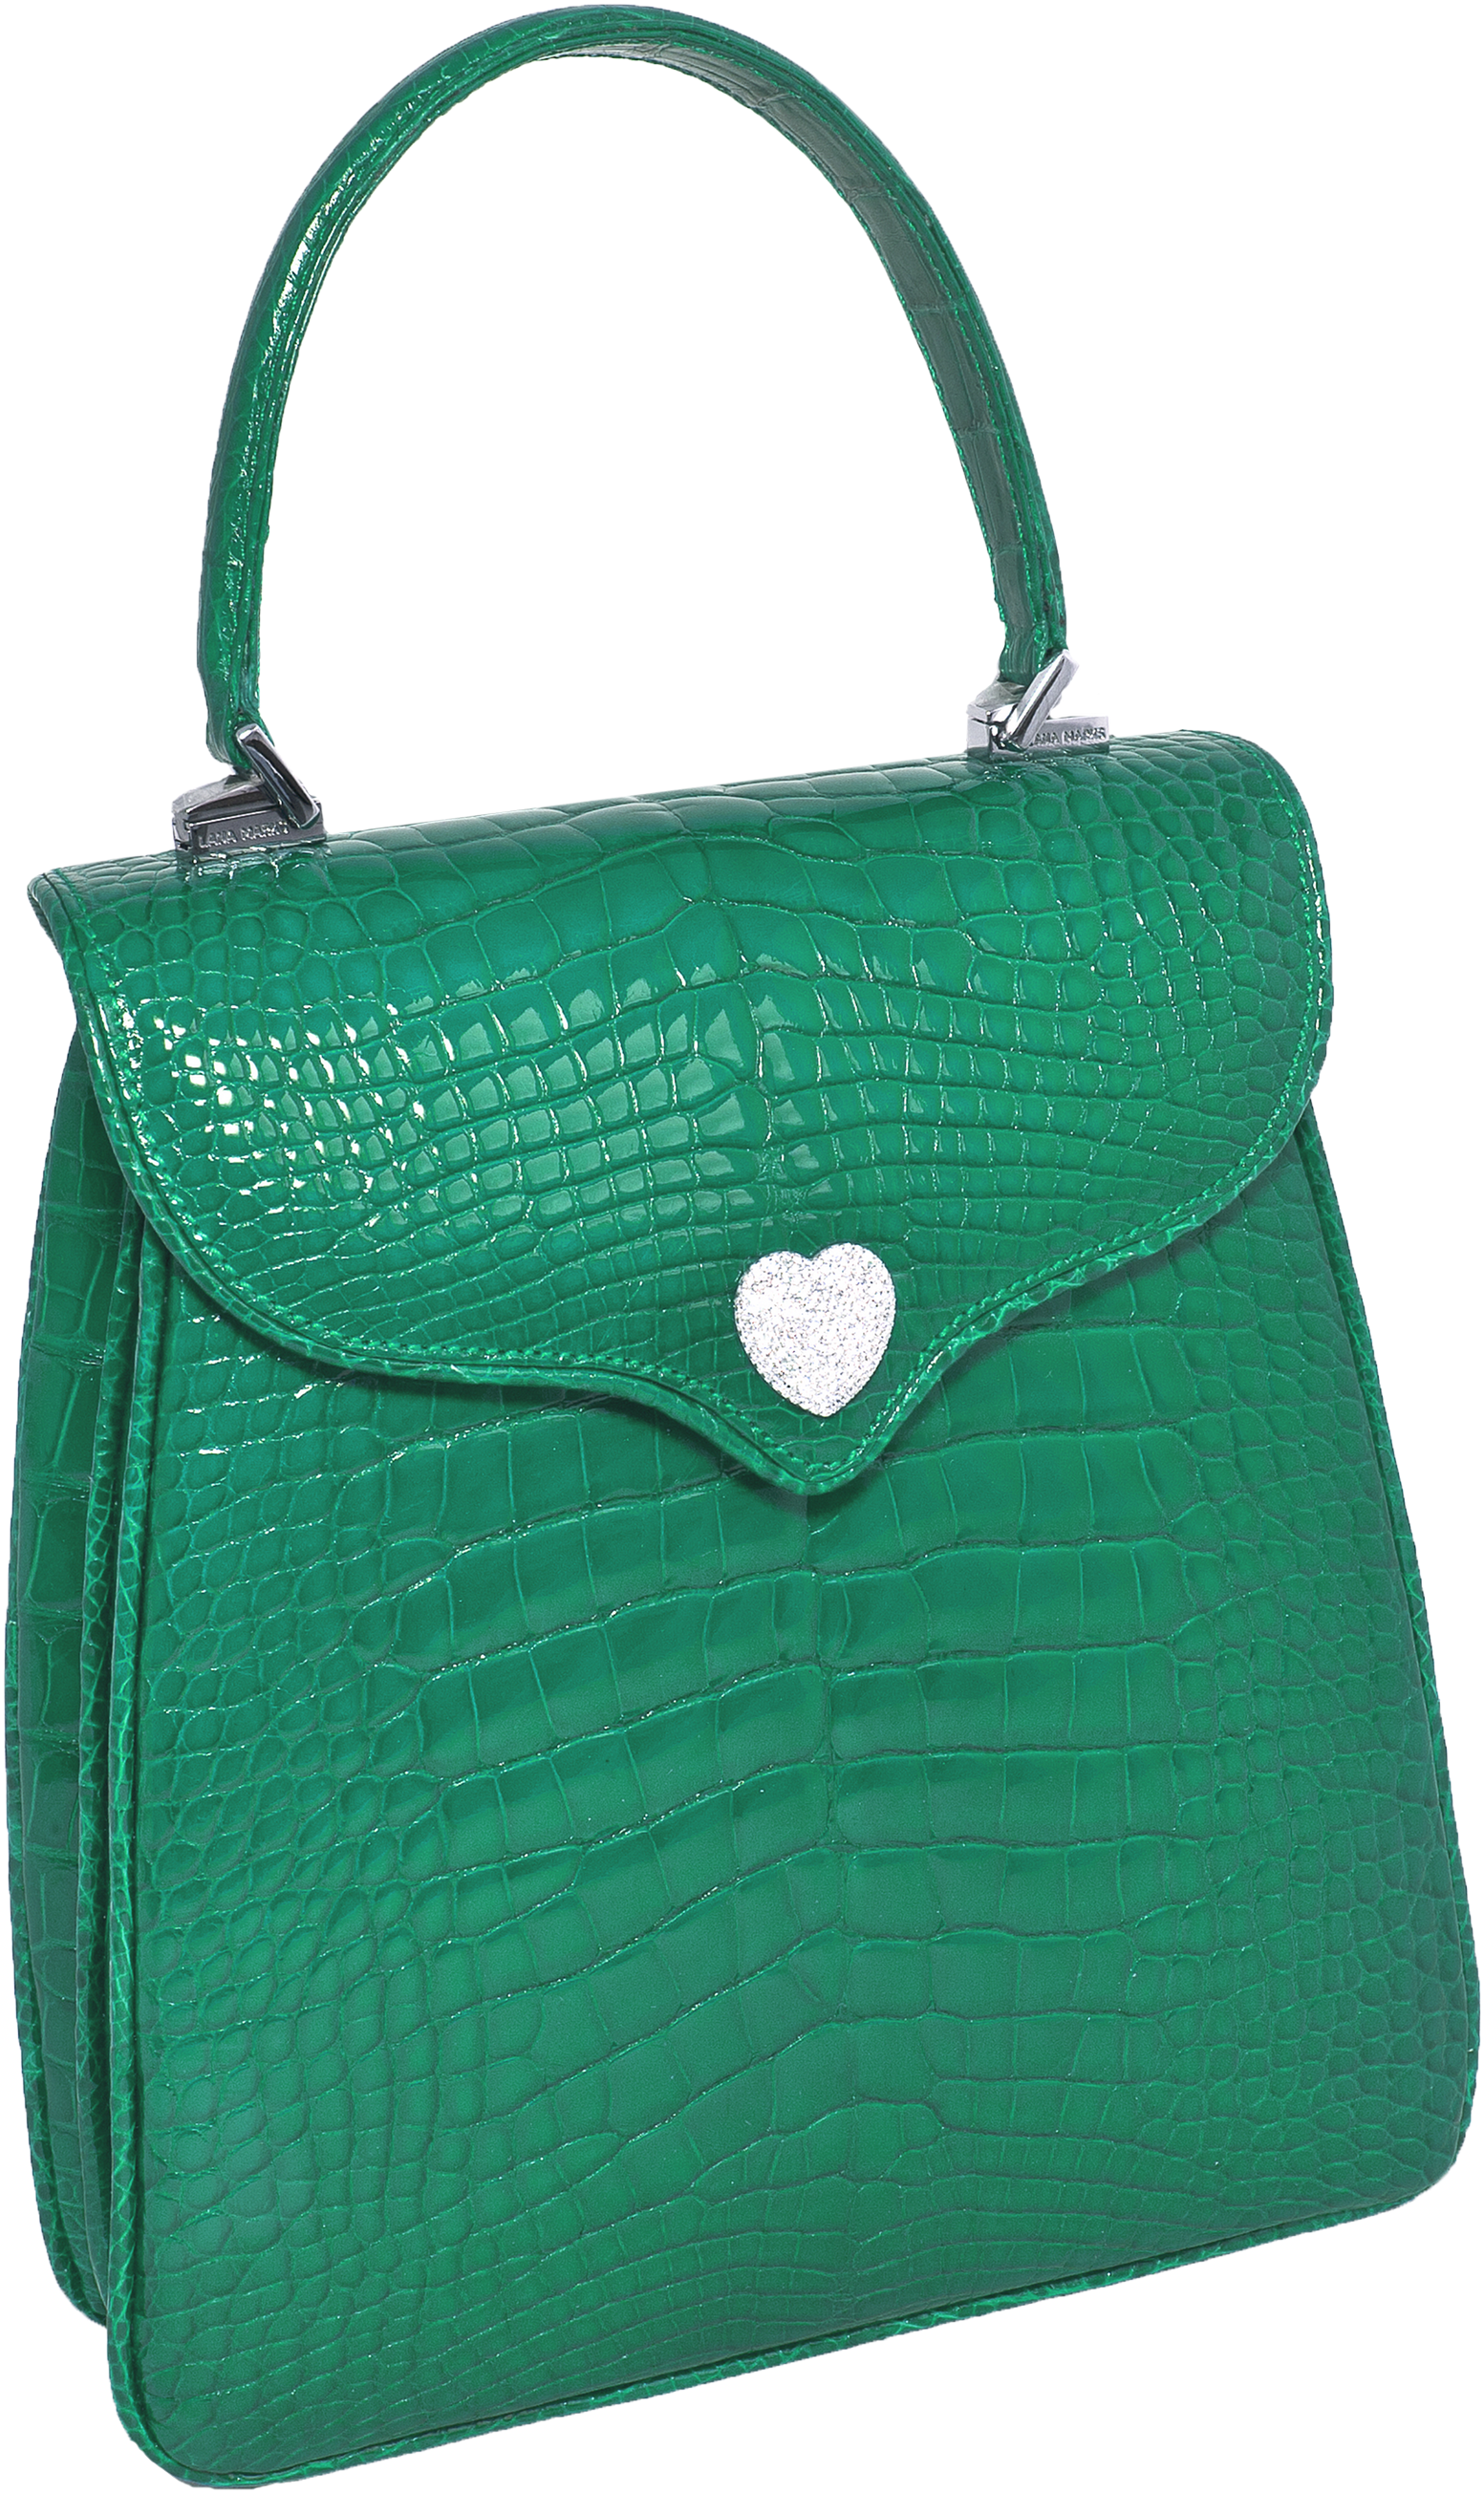 Princess Diana Diamond Heart Green Alligator - Princess Diana Handbag Lana Marks Png (1920x2801), Png Download